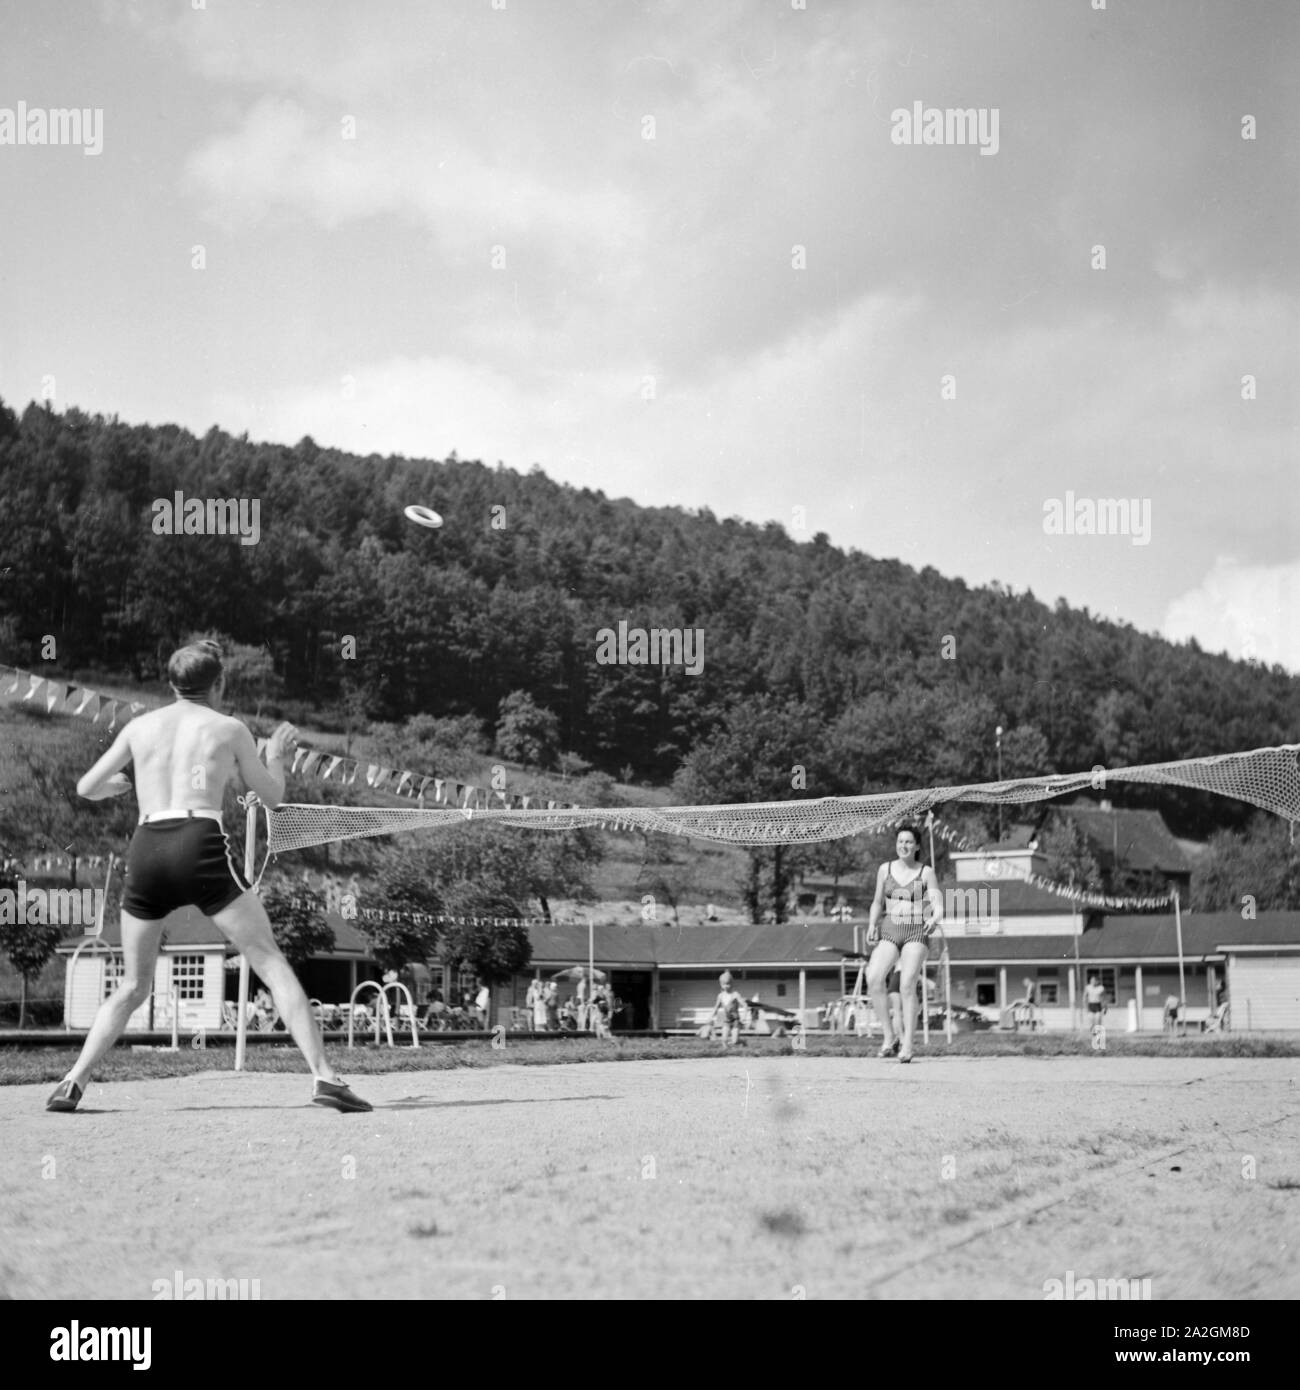 Auf dem Sportplatz, Deutschland 1930er Jahre. At the sporting ground, Germany 1930s. Stock Photo